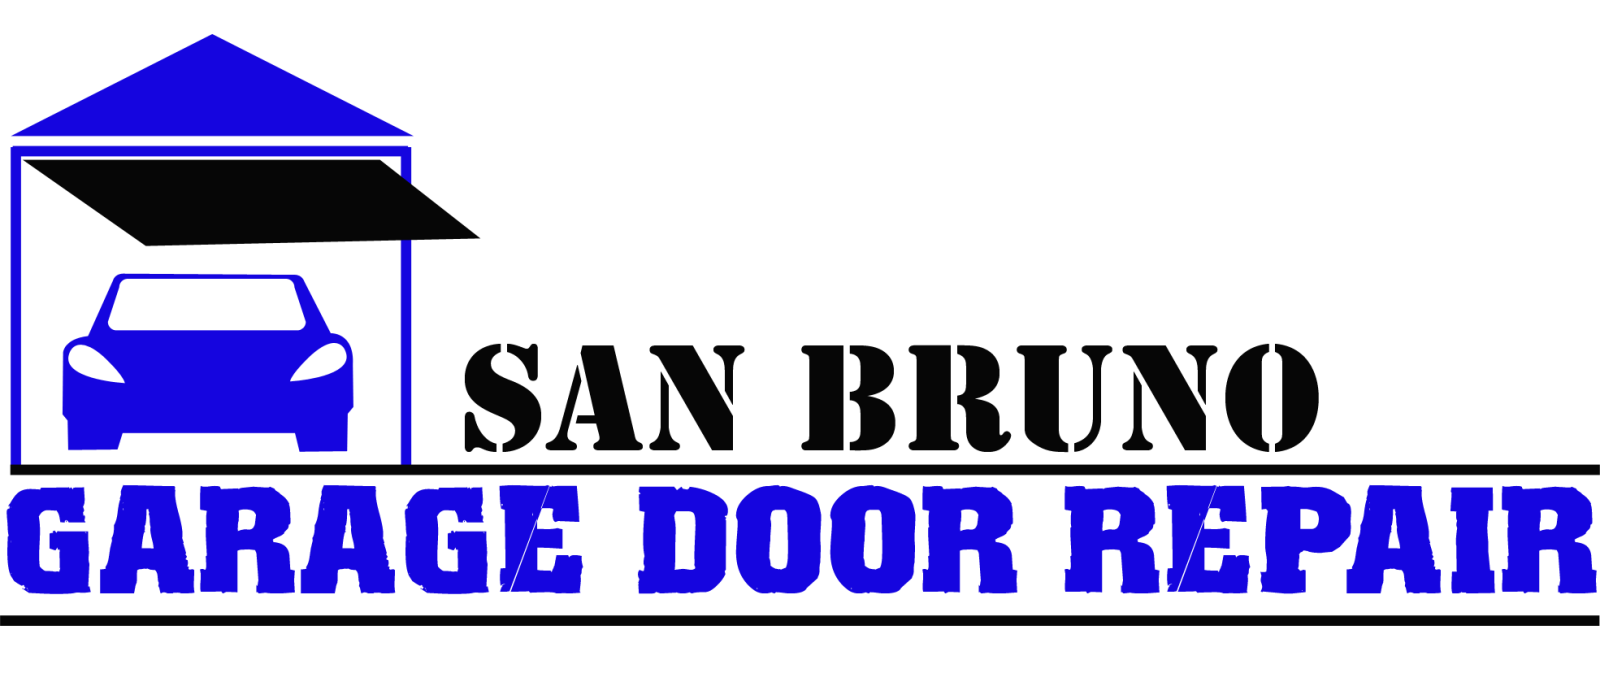 Garage Door Repair San Bruno